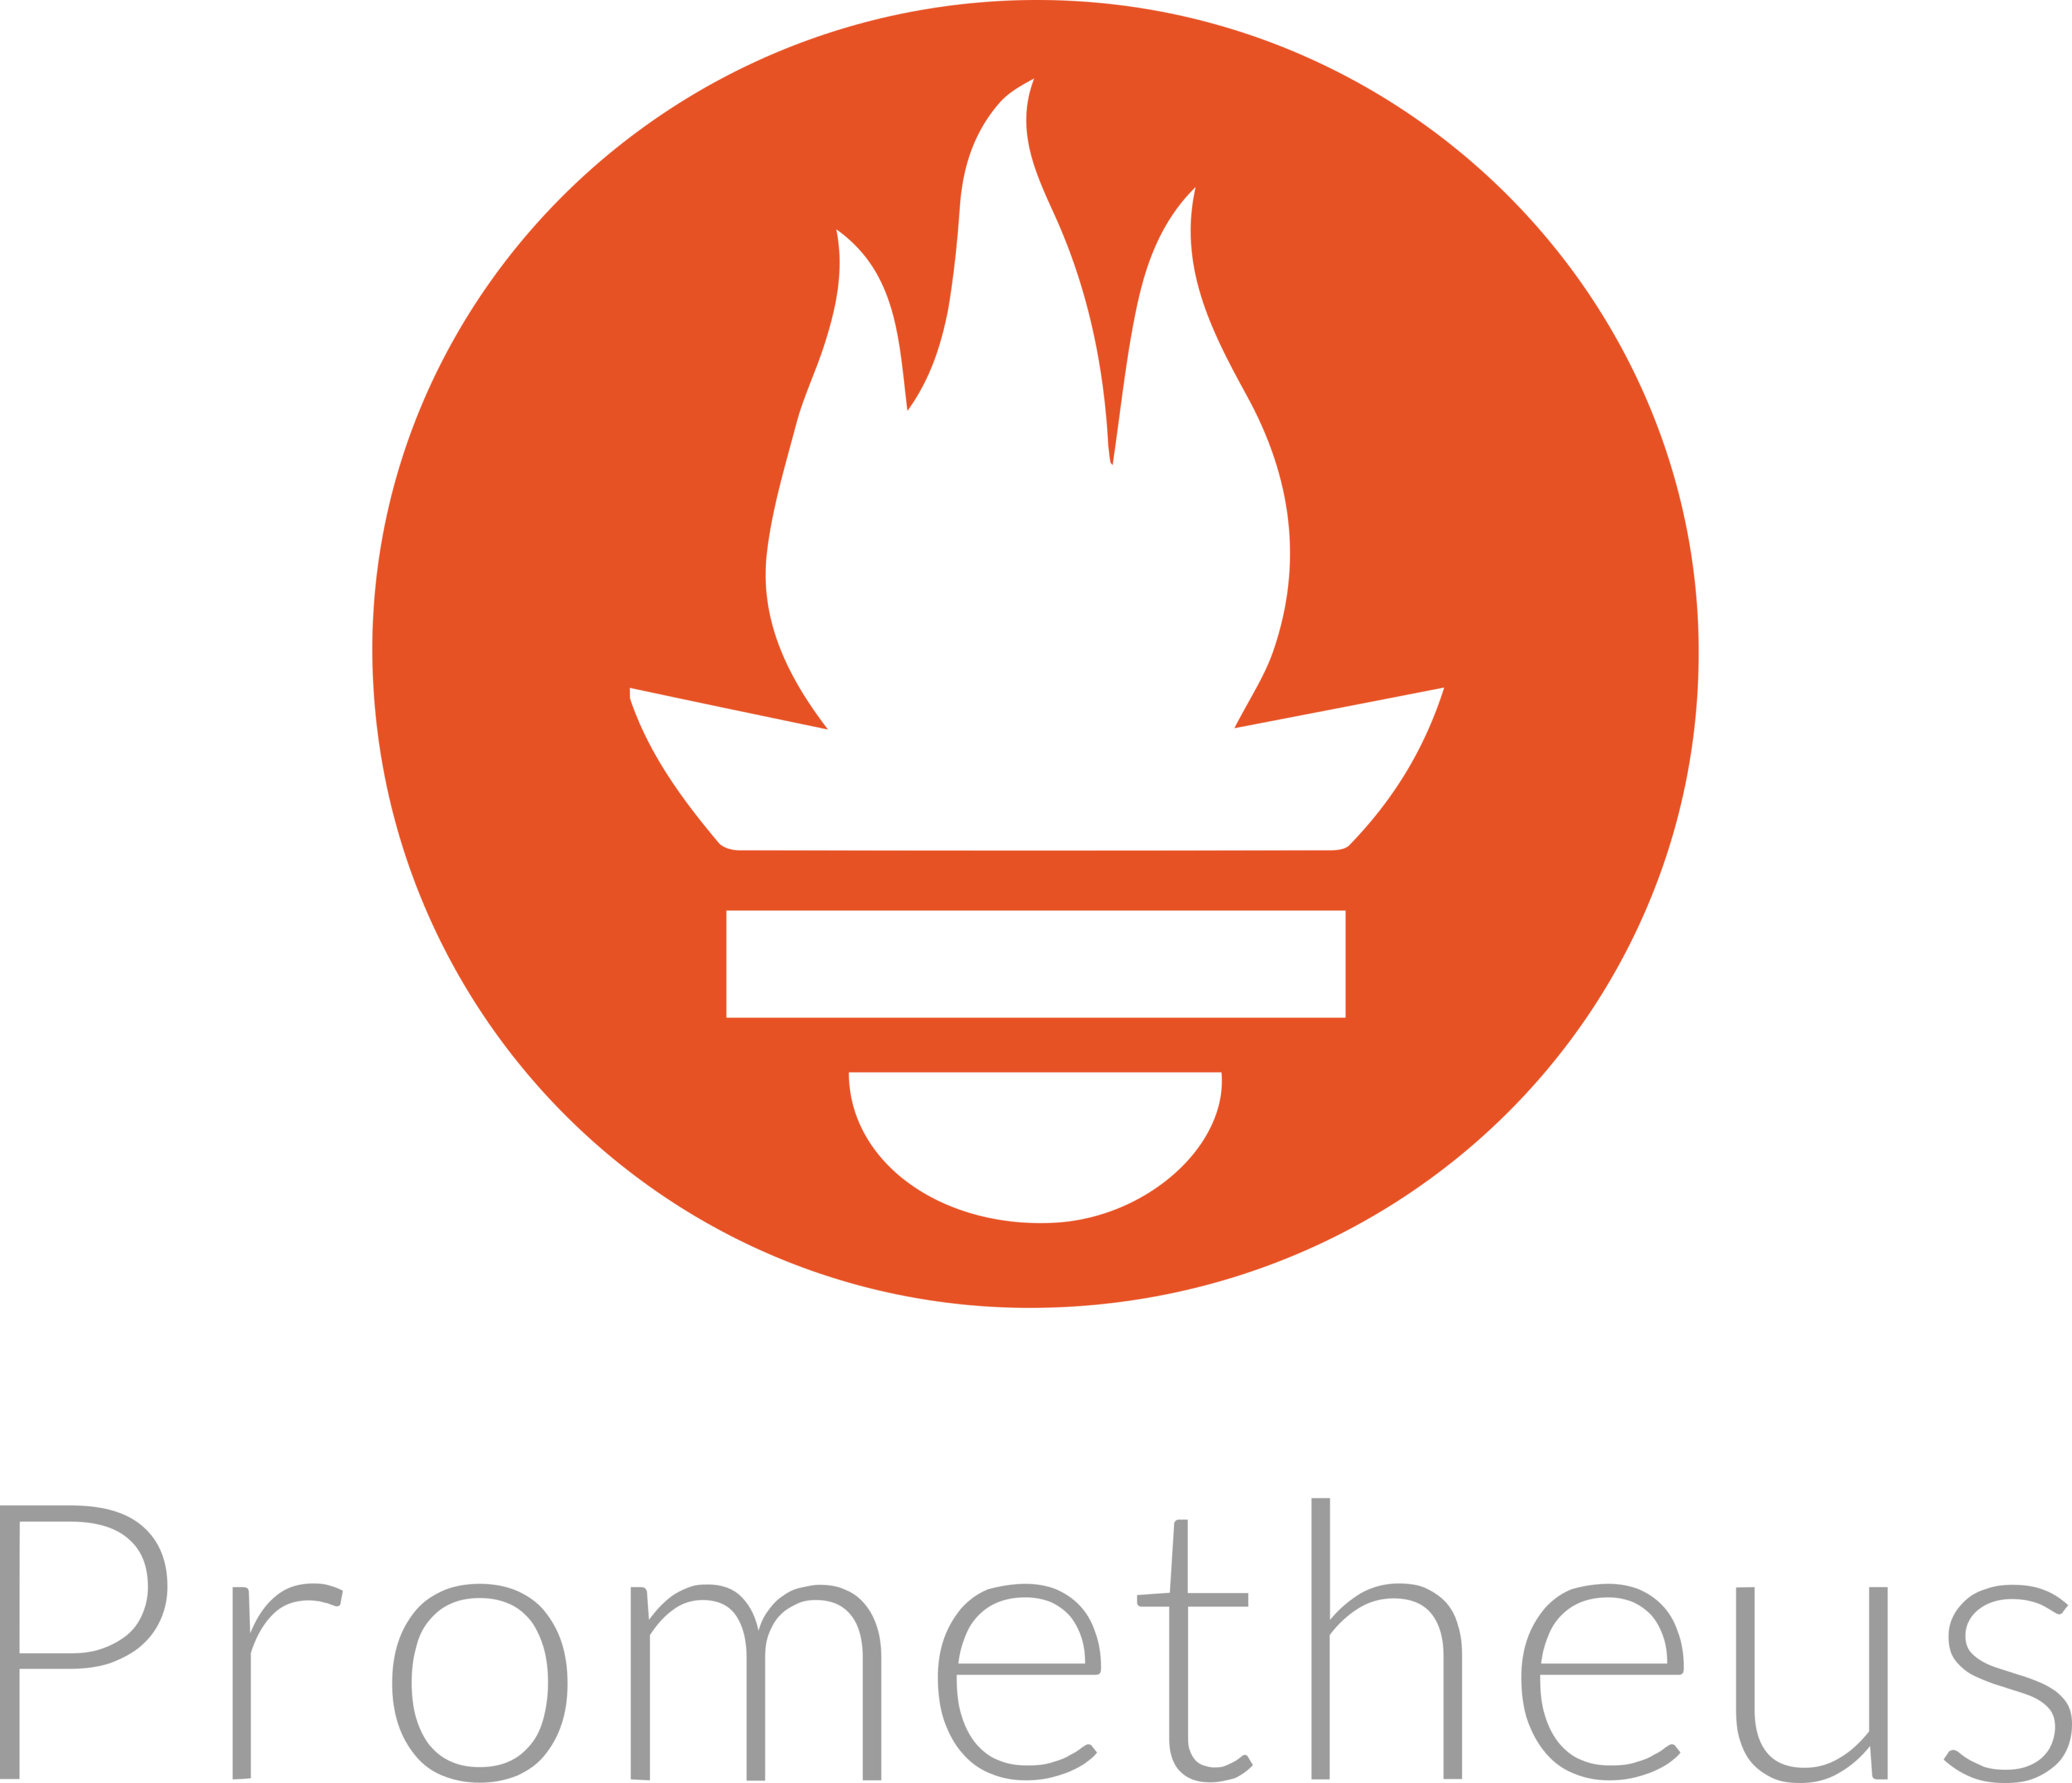 Prometheus Monitoring System Logo